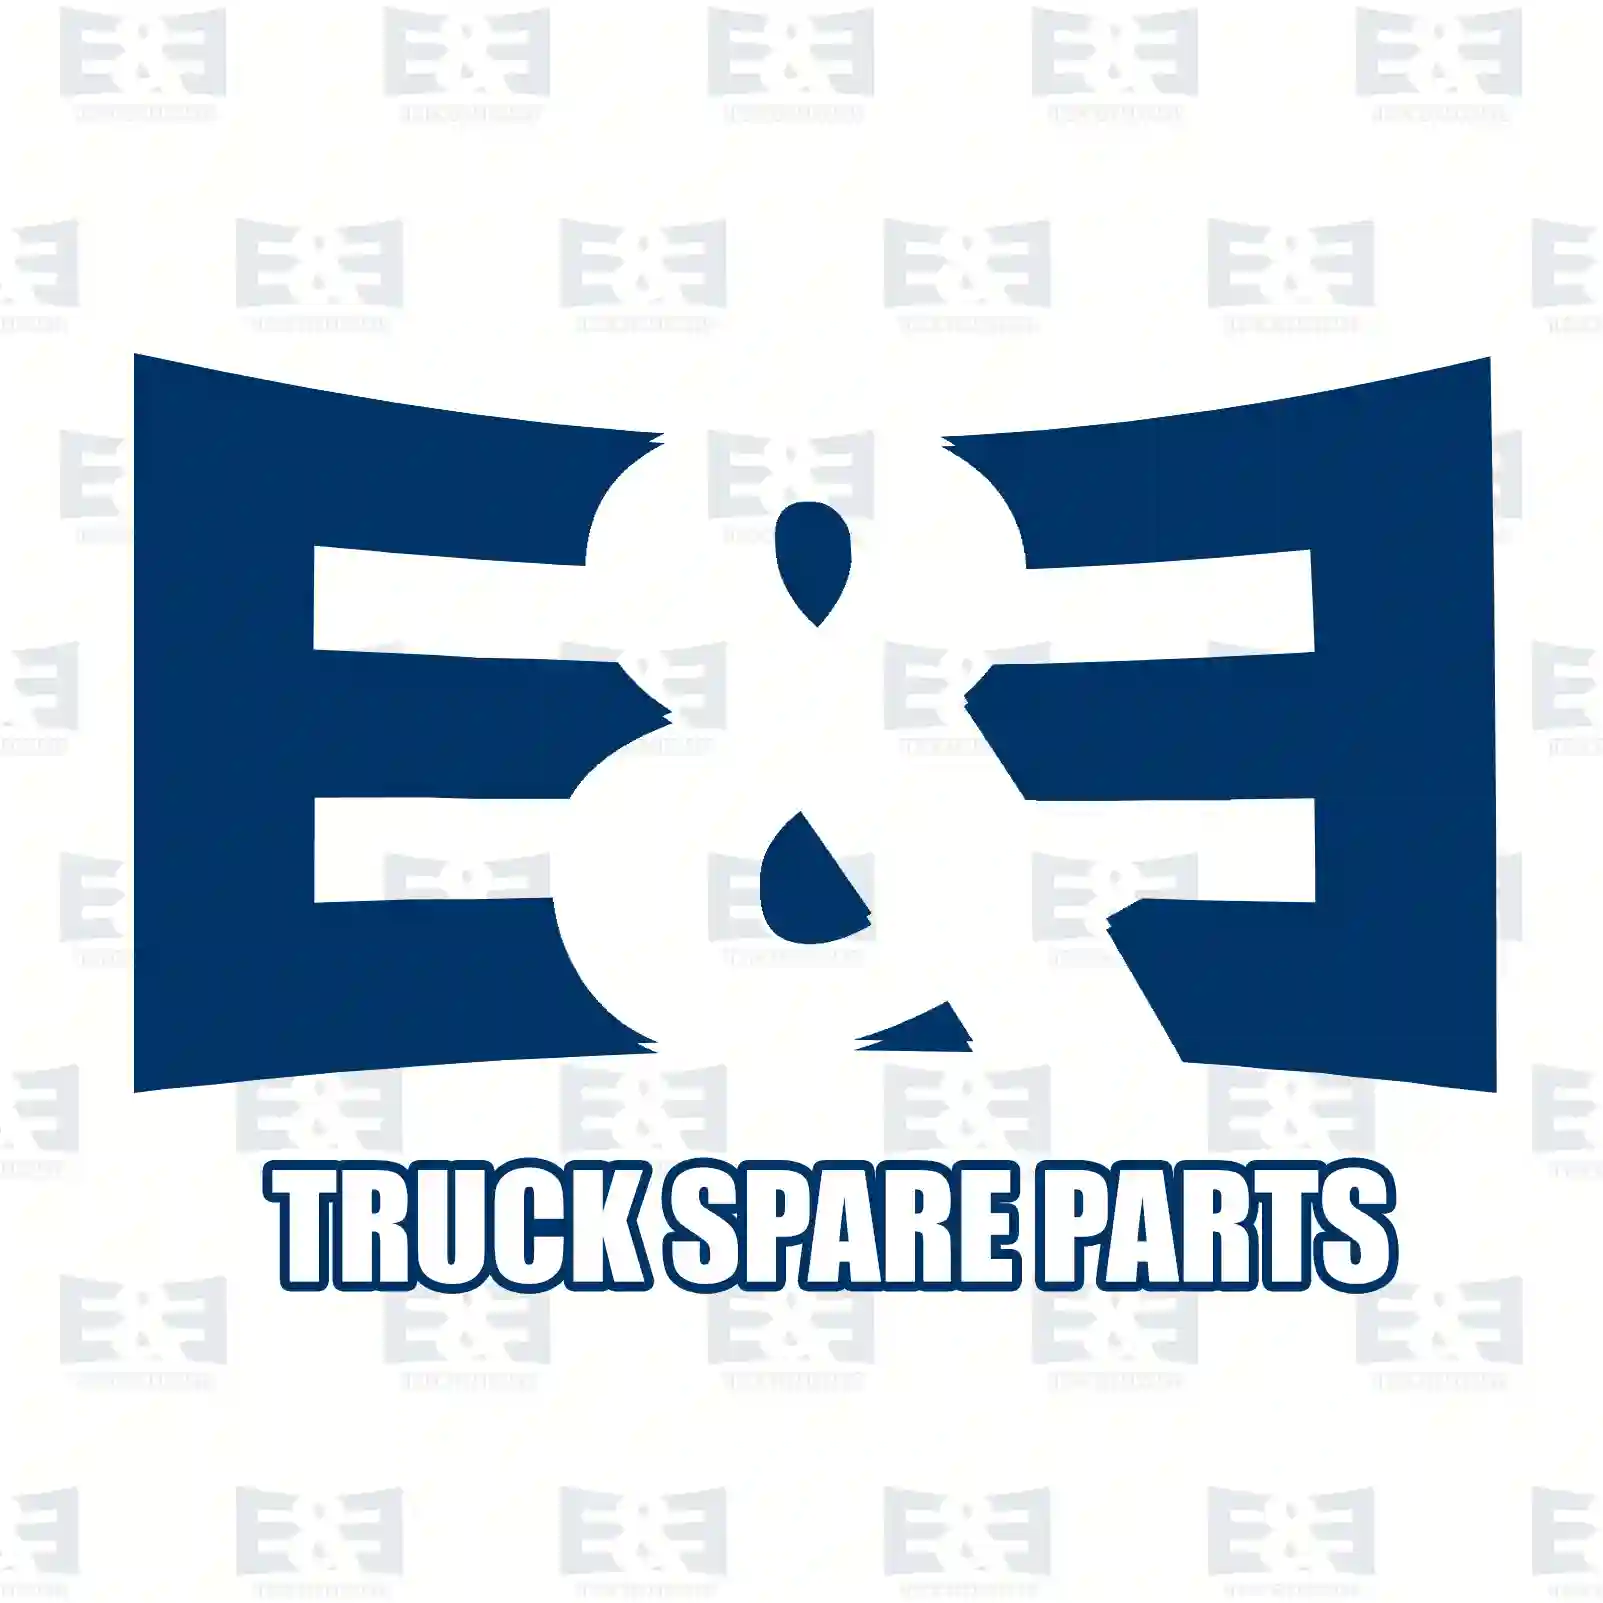 Belt tensioner, 2E2201293, 1865233, 2191988, 2197388, ZG00919-0008 ||  2E2201293 E&E Truck Spare Parts | Truck Spare Parts, Auotomotive Spare Parts Belt tensioner, 2E2201293, 1865233, 2191988, 2197388, ZG00919-0008 ||  2E2201293 E&E Truck Spare Parts | Truck Spare Parts, Auotomotive Spare Parts